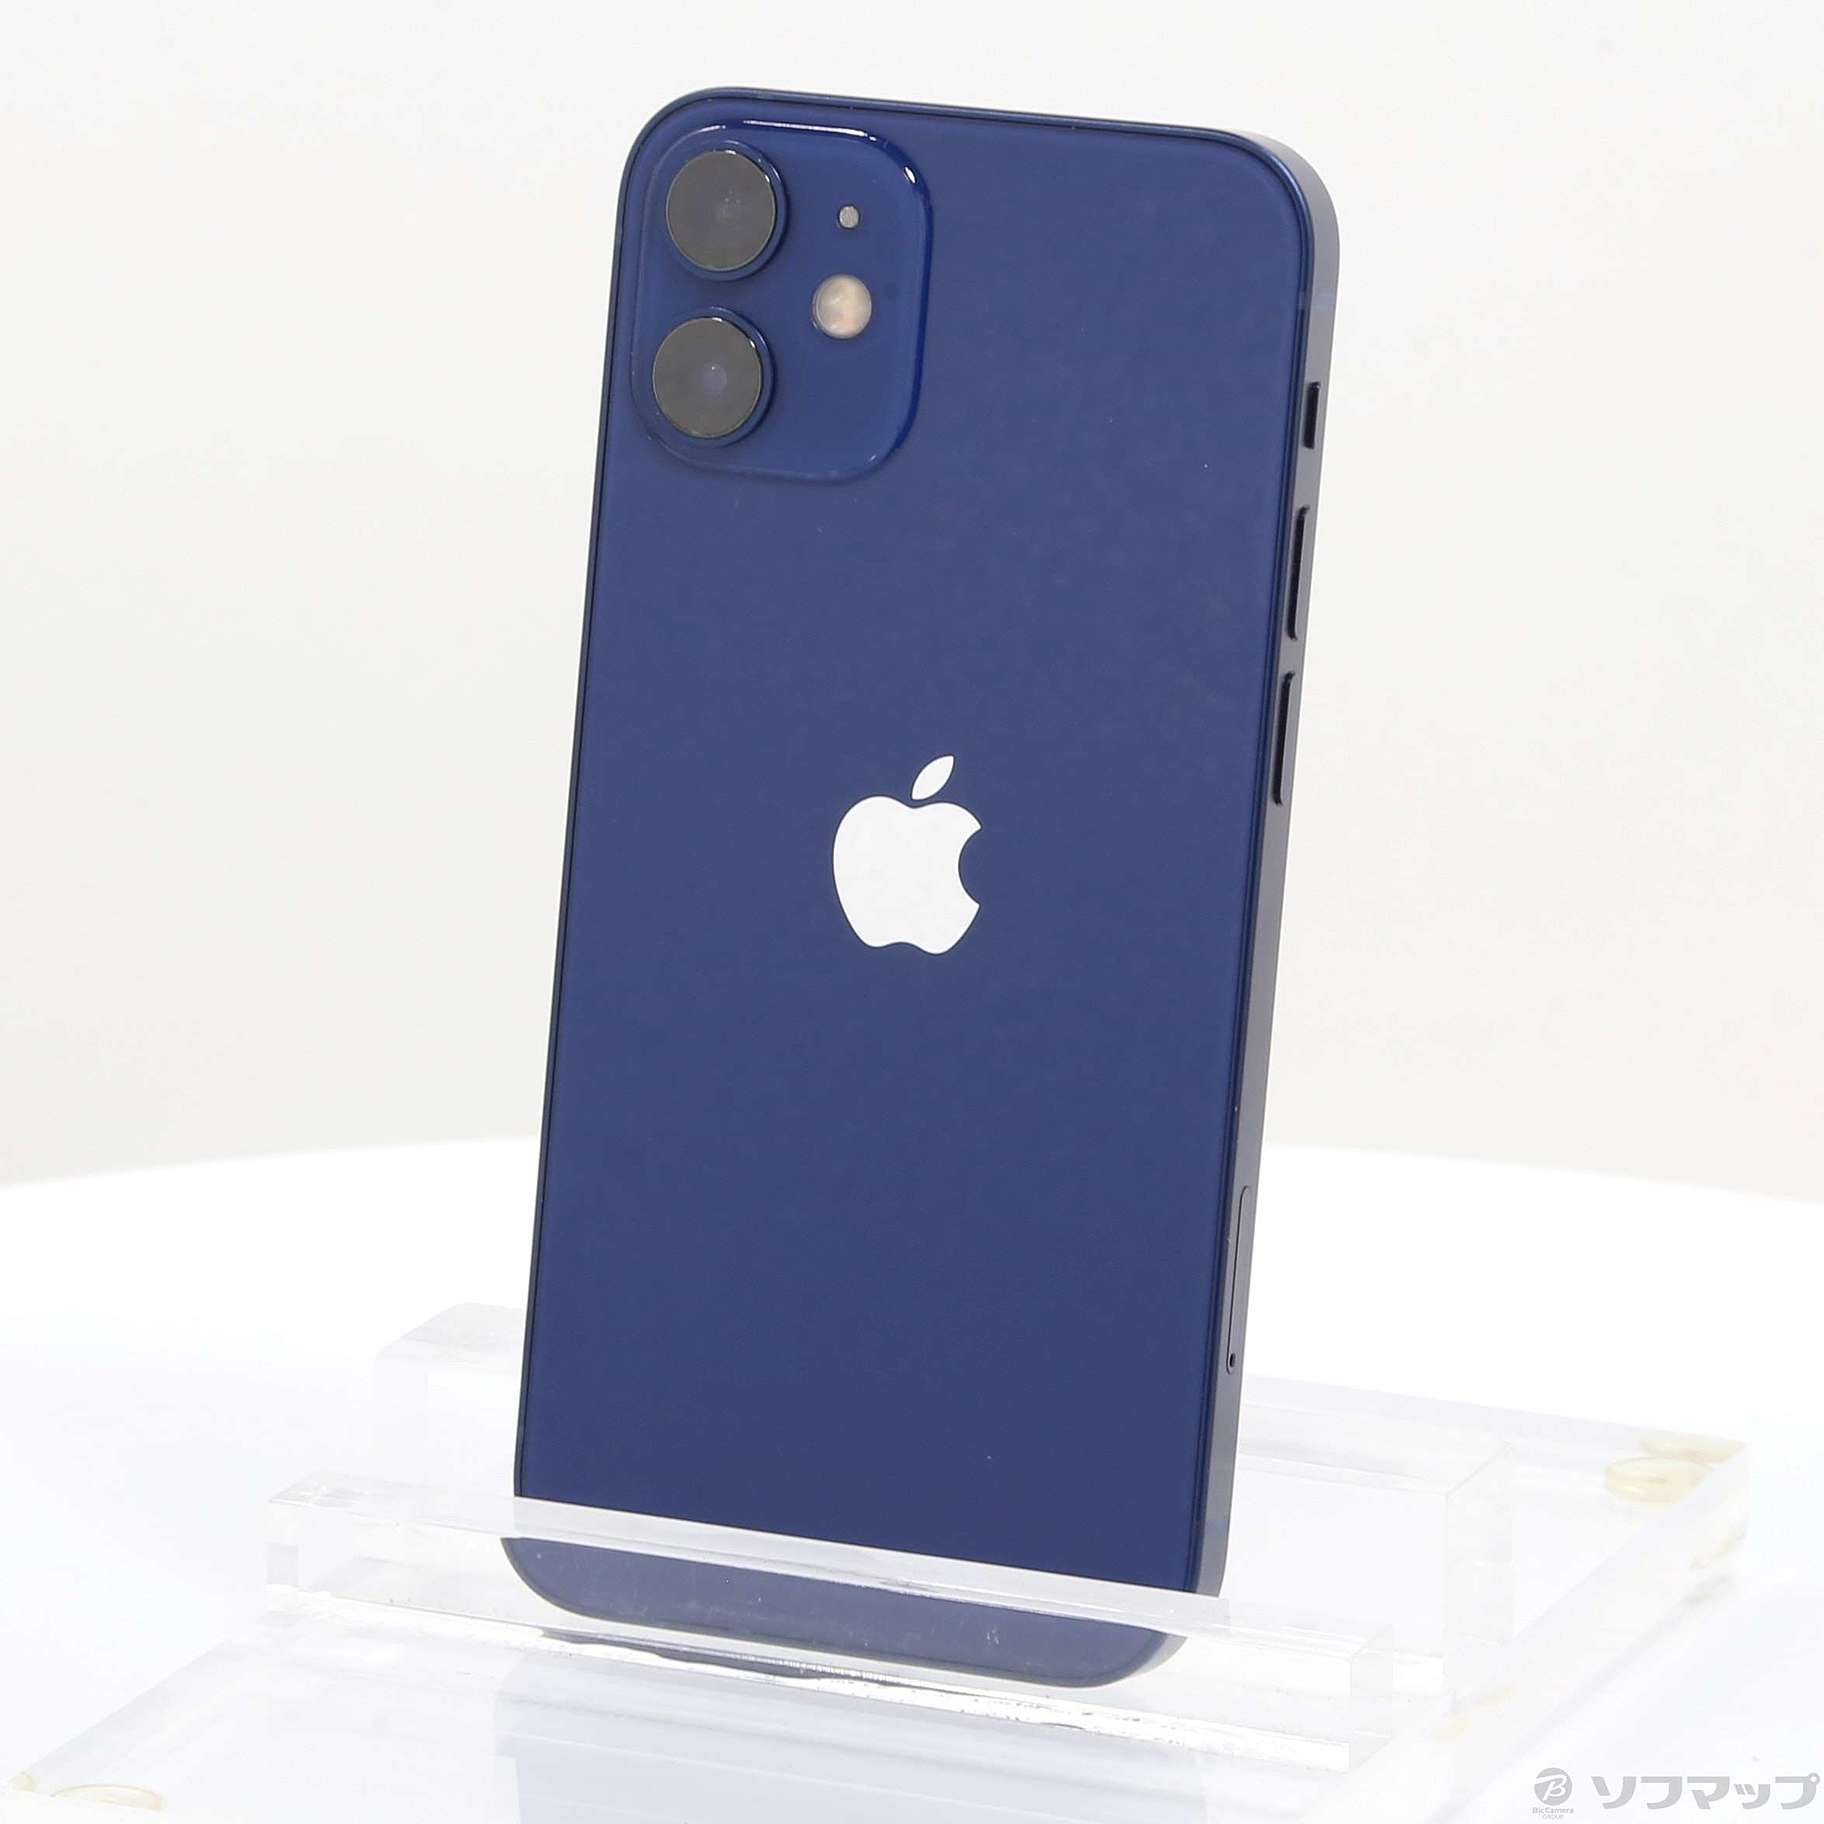 iPhone12 mini 256GB SIMフリー ブルー - www.sorbillomenu.com